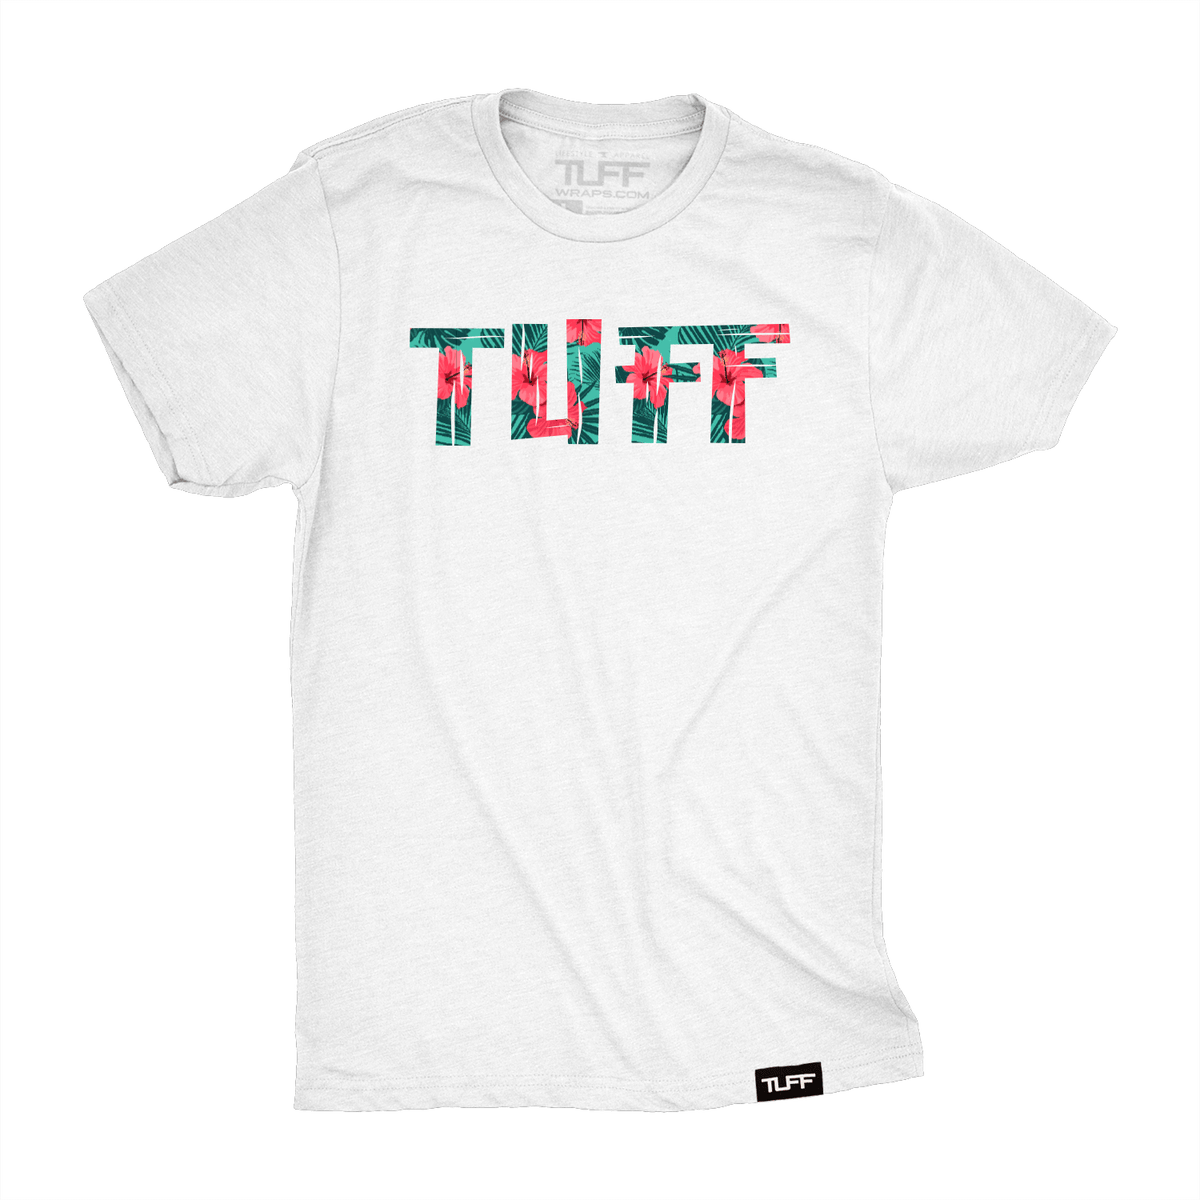 TUFF Hawaii Tee T-shirt